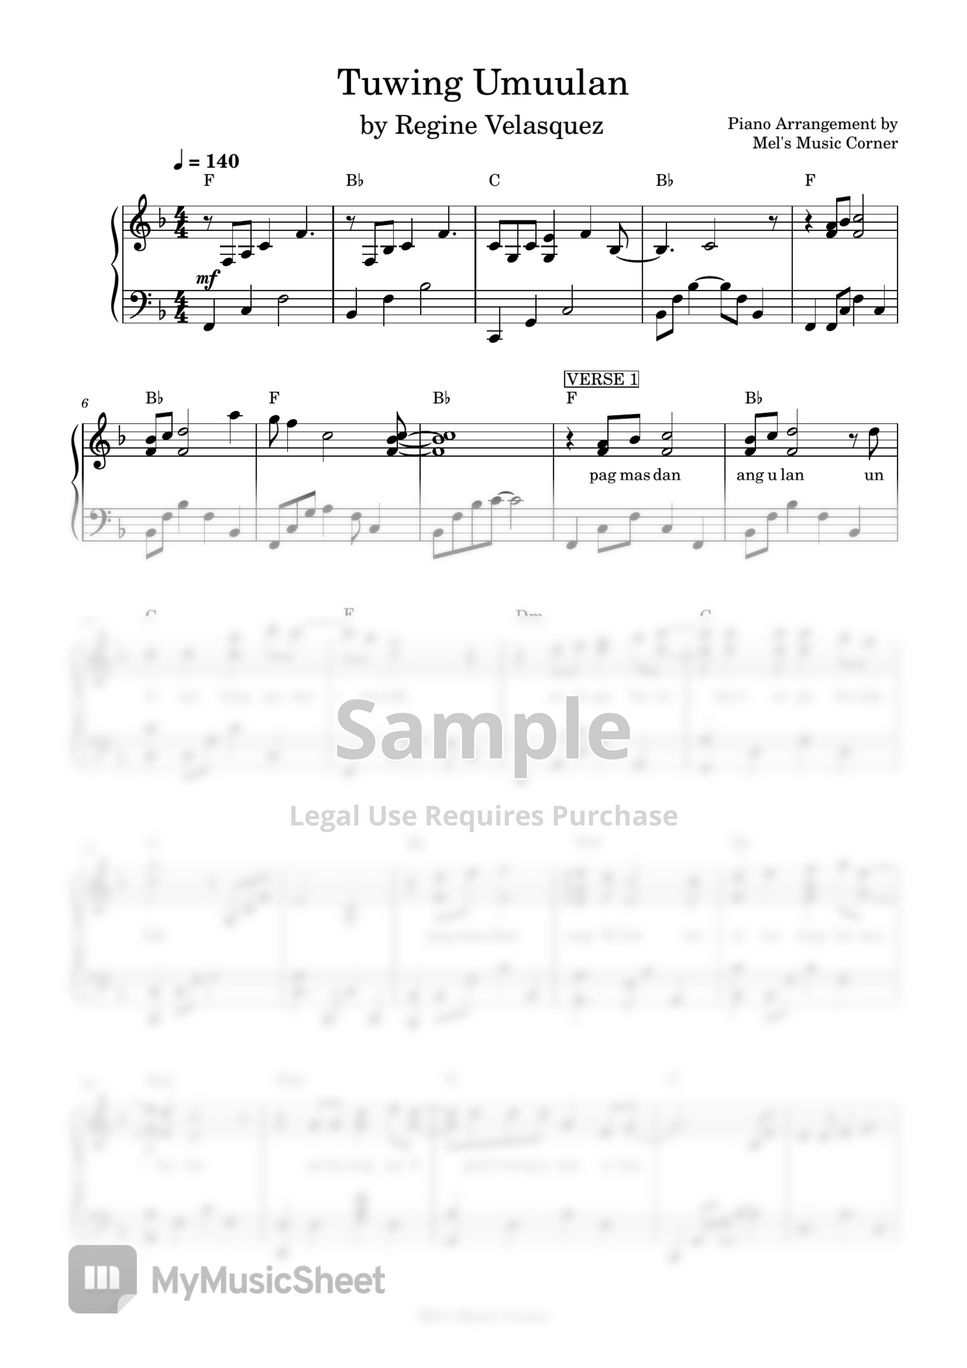 Regine Velasquez - Tuwing Umuulan (piano sheet music) by Mel's Music Corner